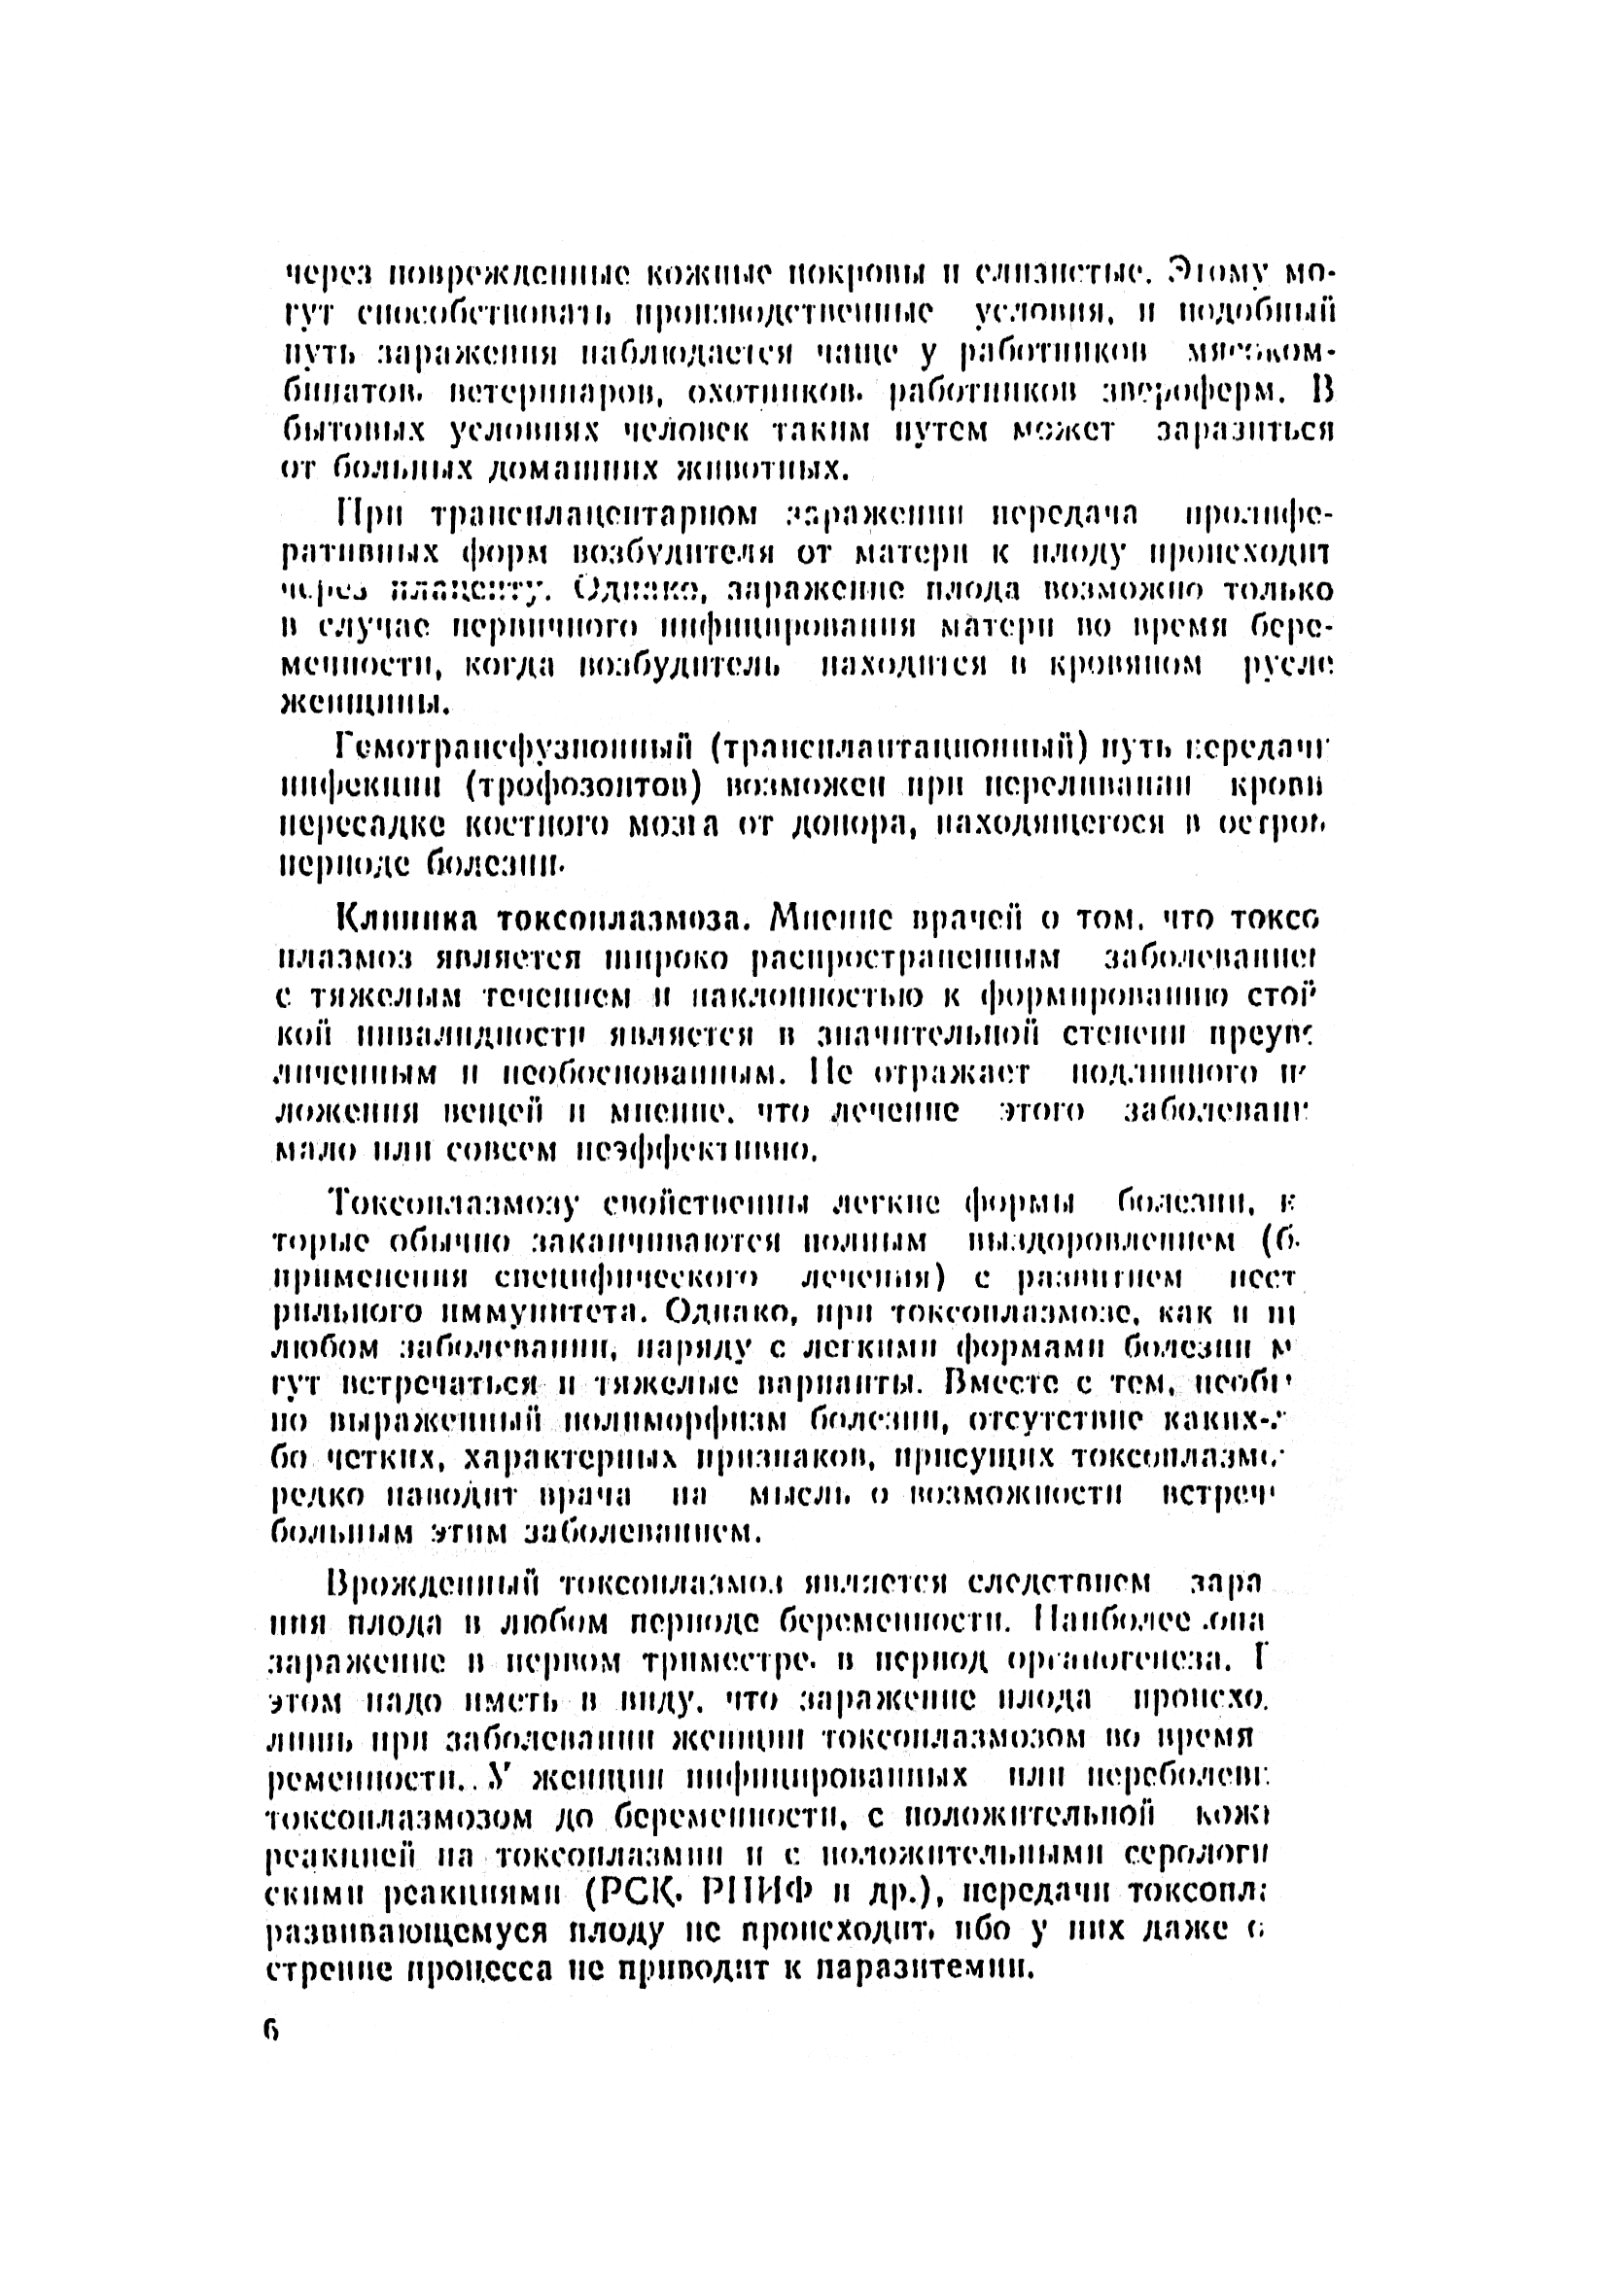 Методические рекомендации 10/11-31